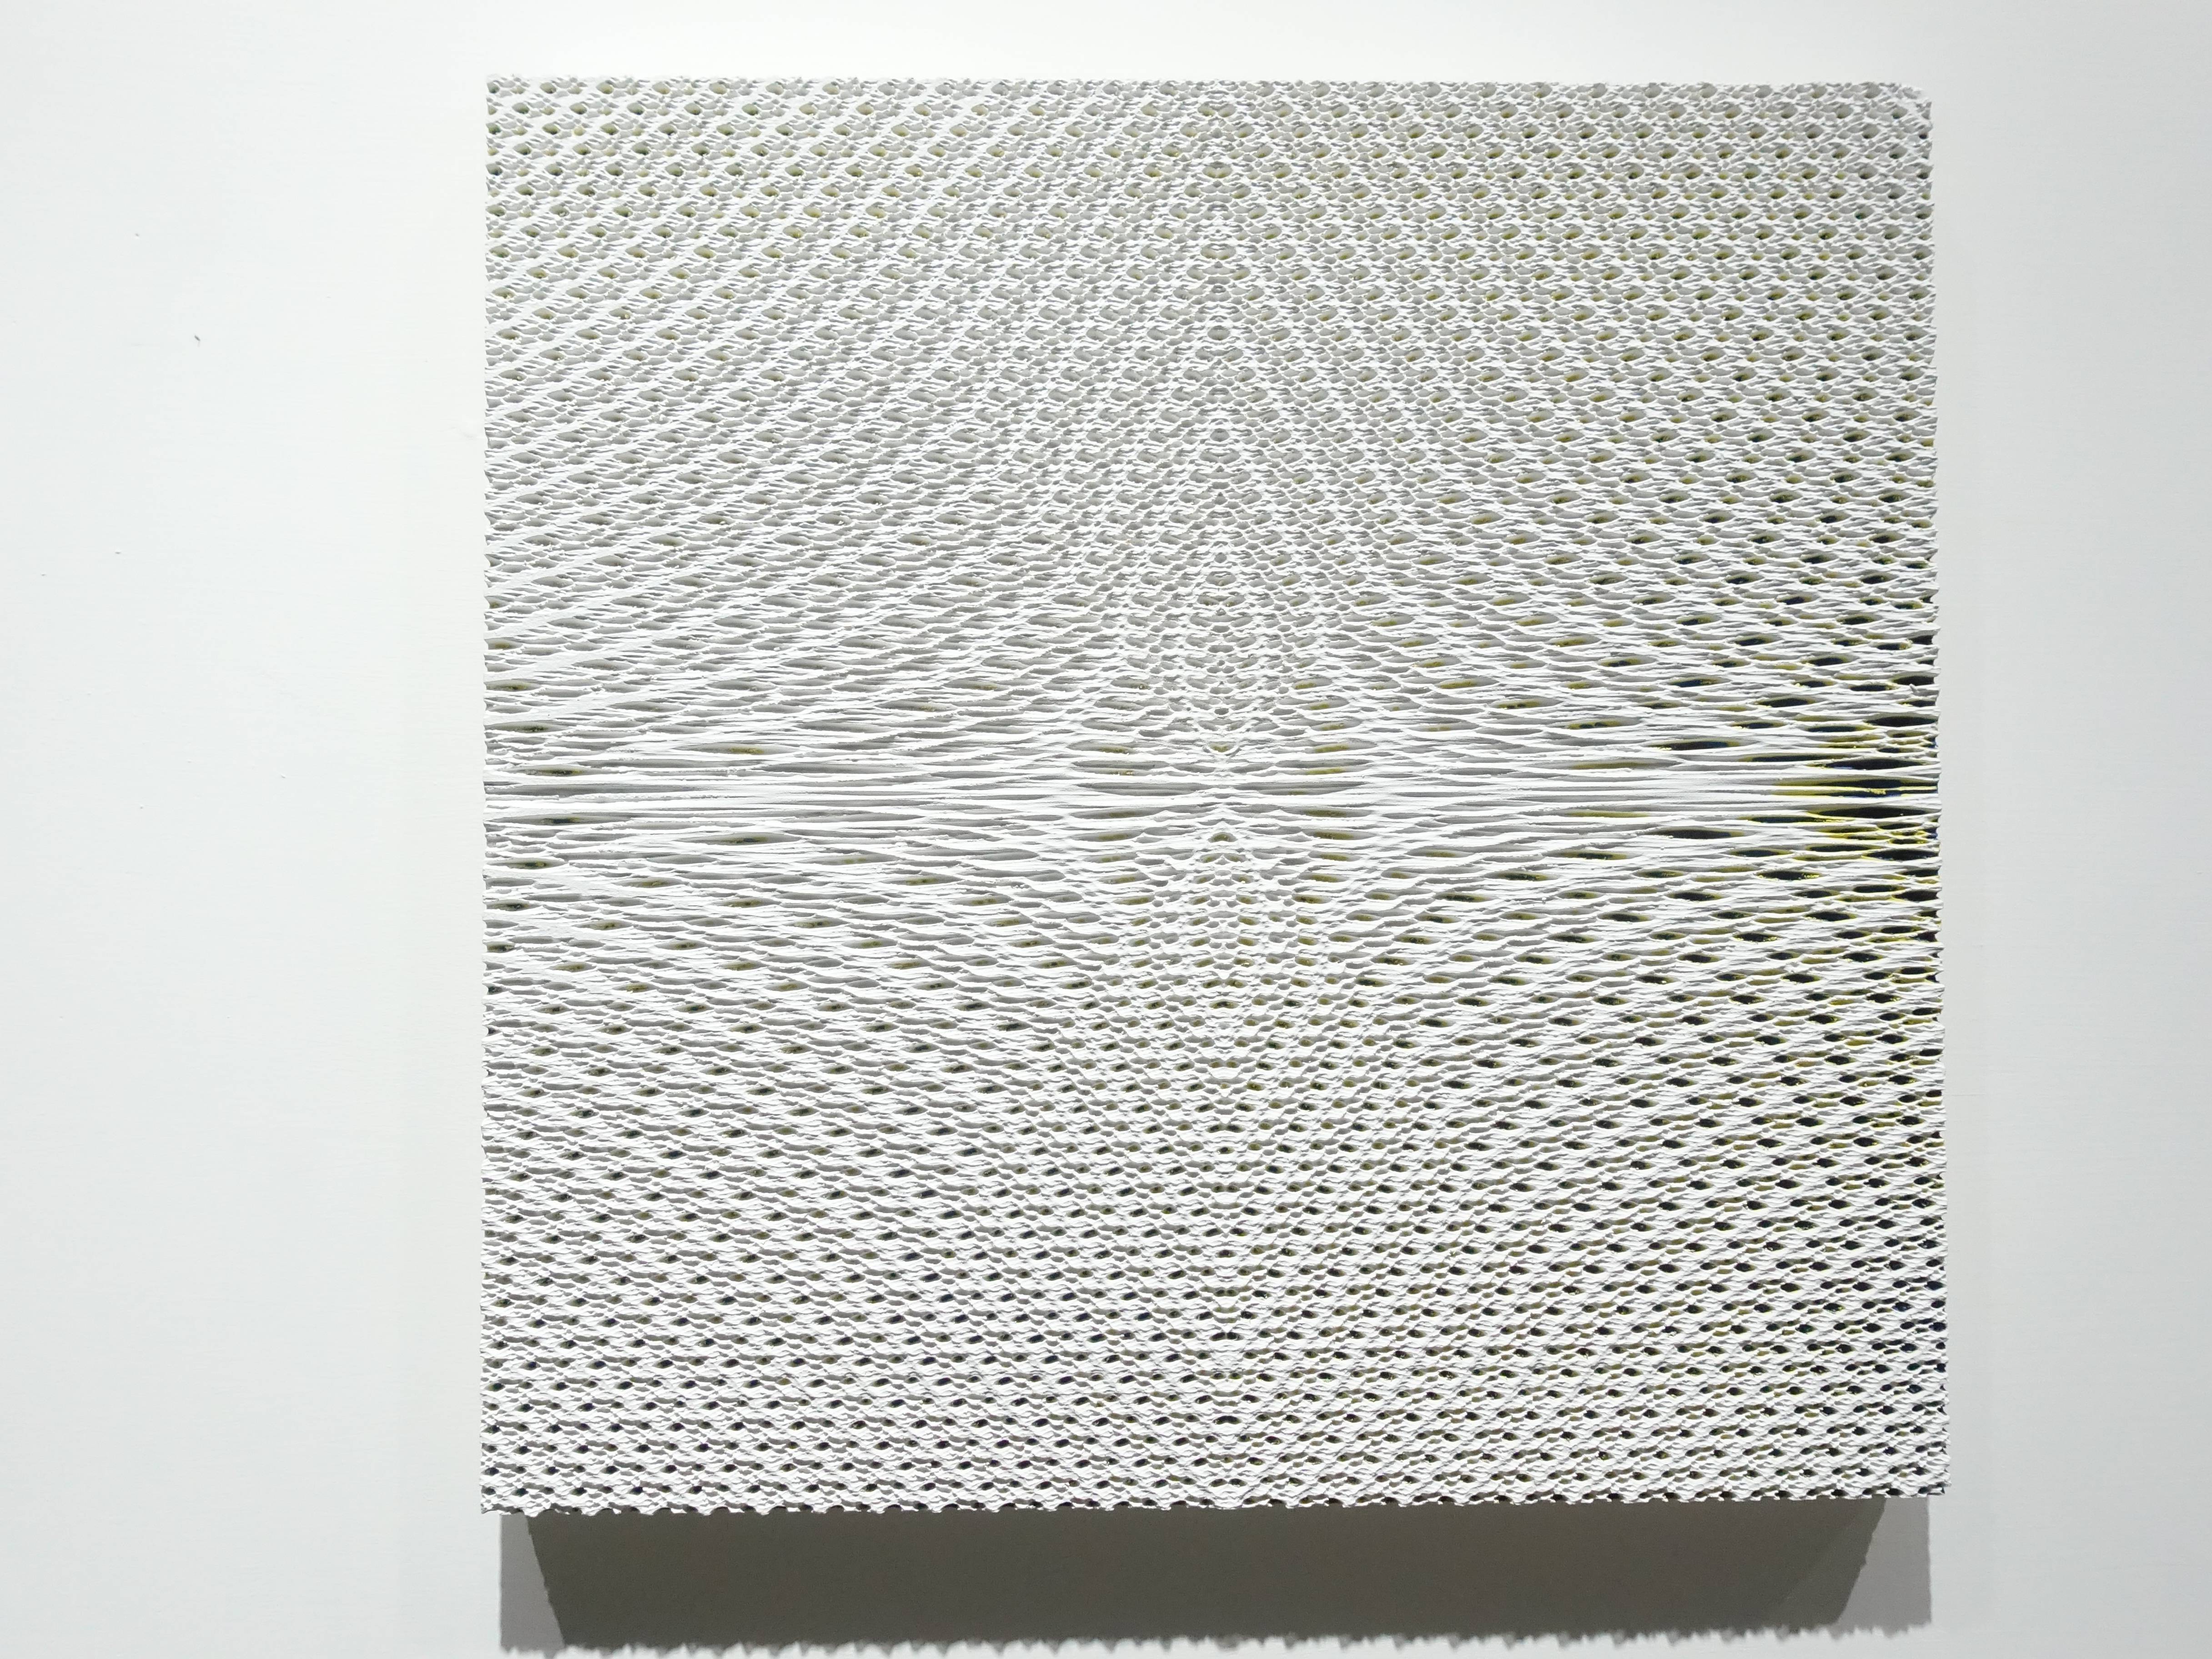 歐勁，《無題-154》，30 x 31 cm，木板、丙烯、綜合材料，2019。